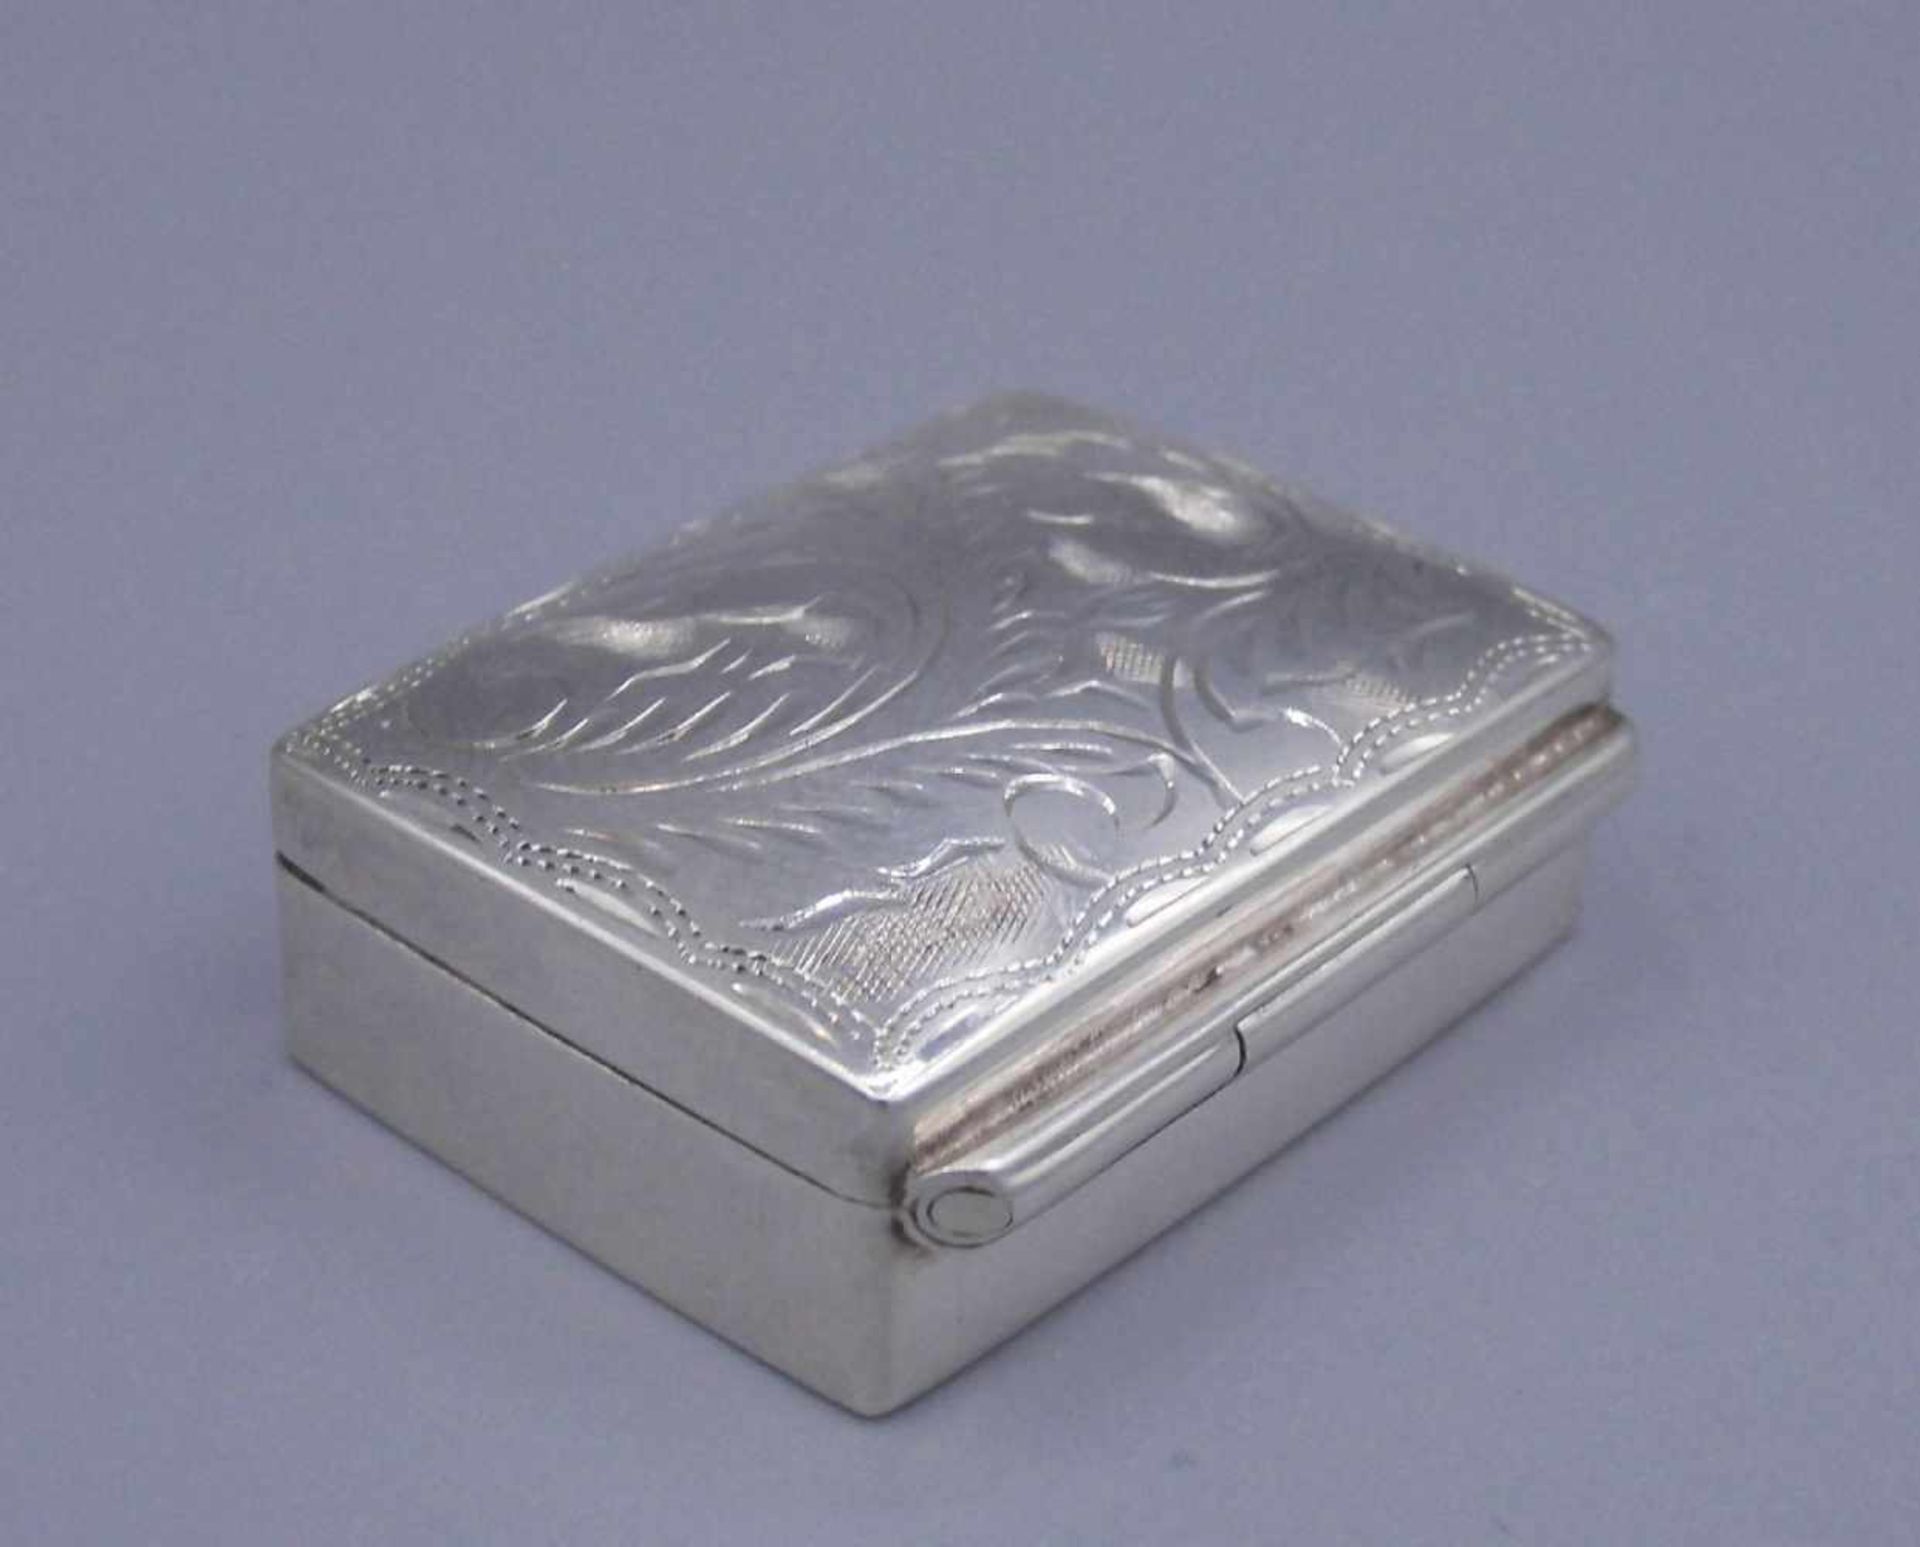 PILLENDOSE / DECKELDOSE / SCHATULLE / pillbox, 925er Silber (gepunzt mit Feingehaltsangabe, 14 g). - Bild 2 aus 4